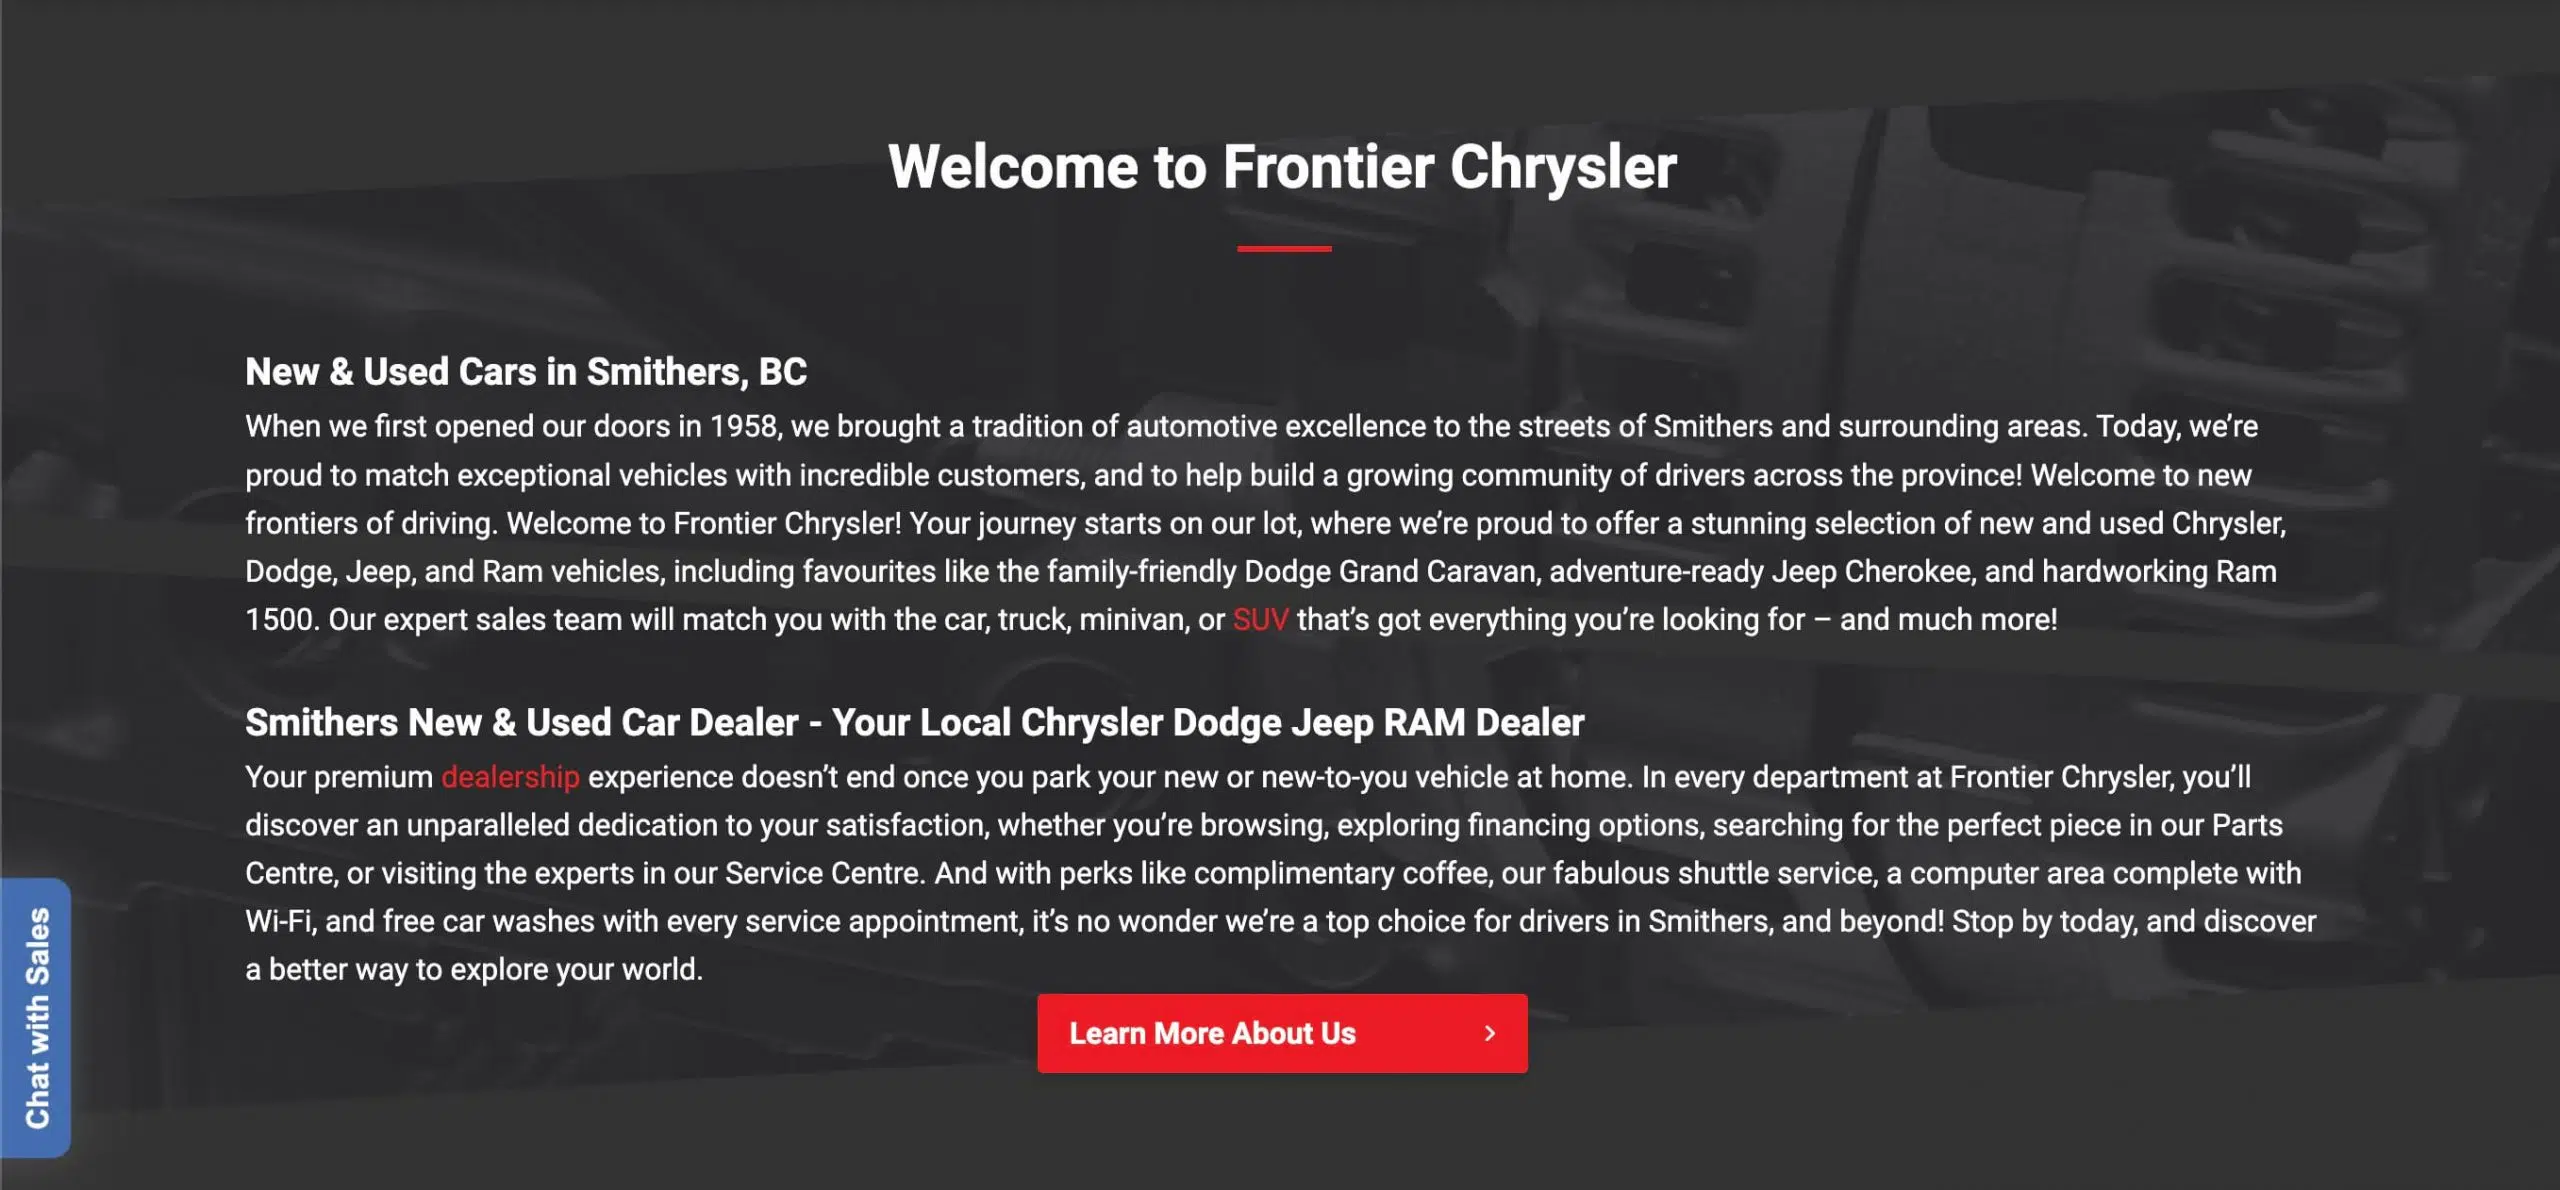 Frontier Chrysler